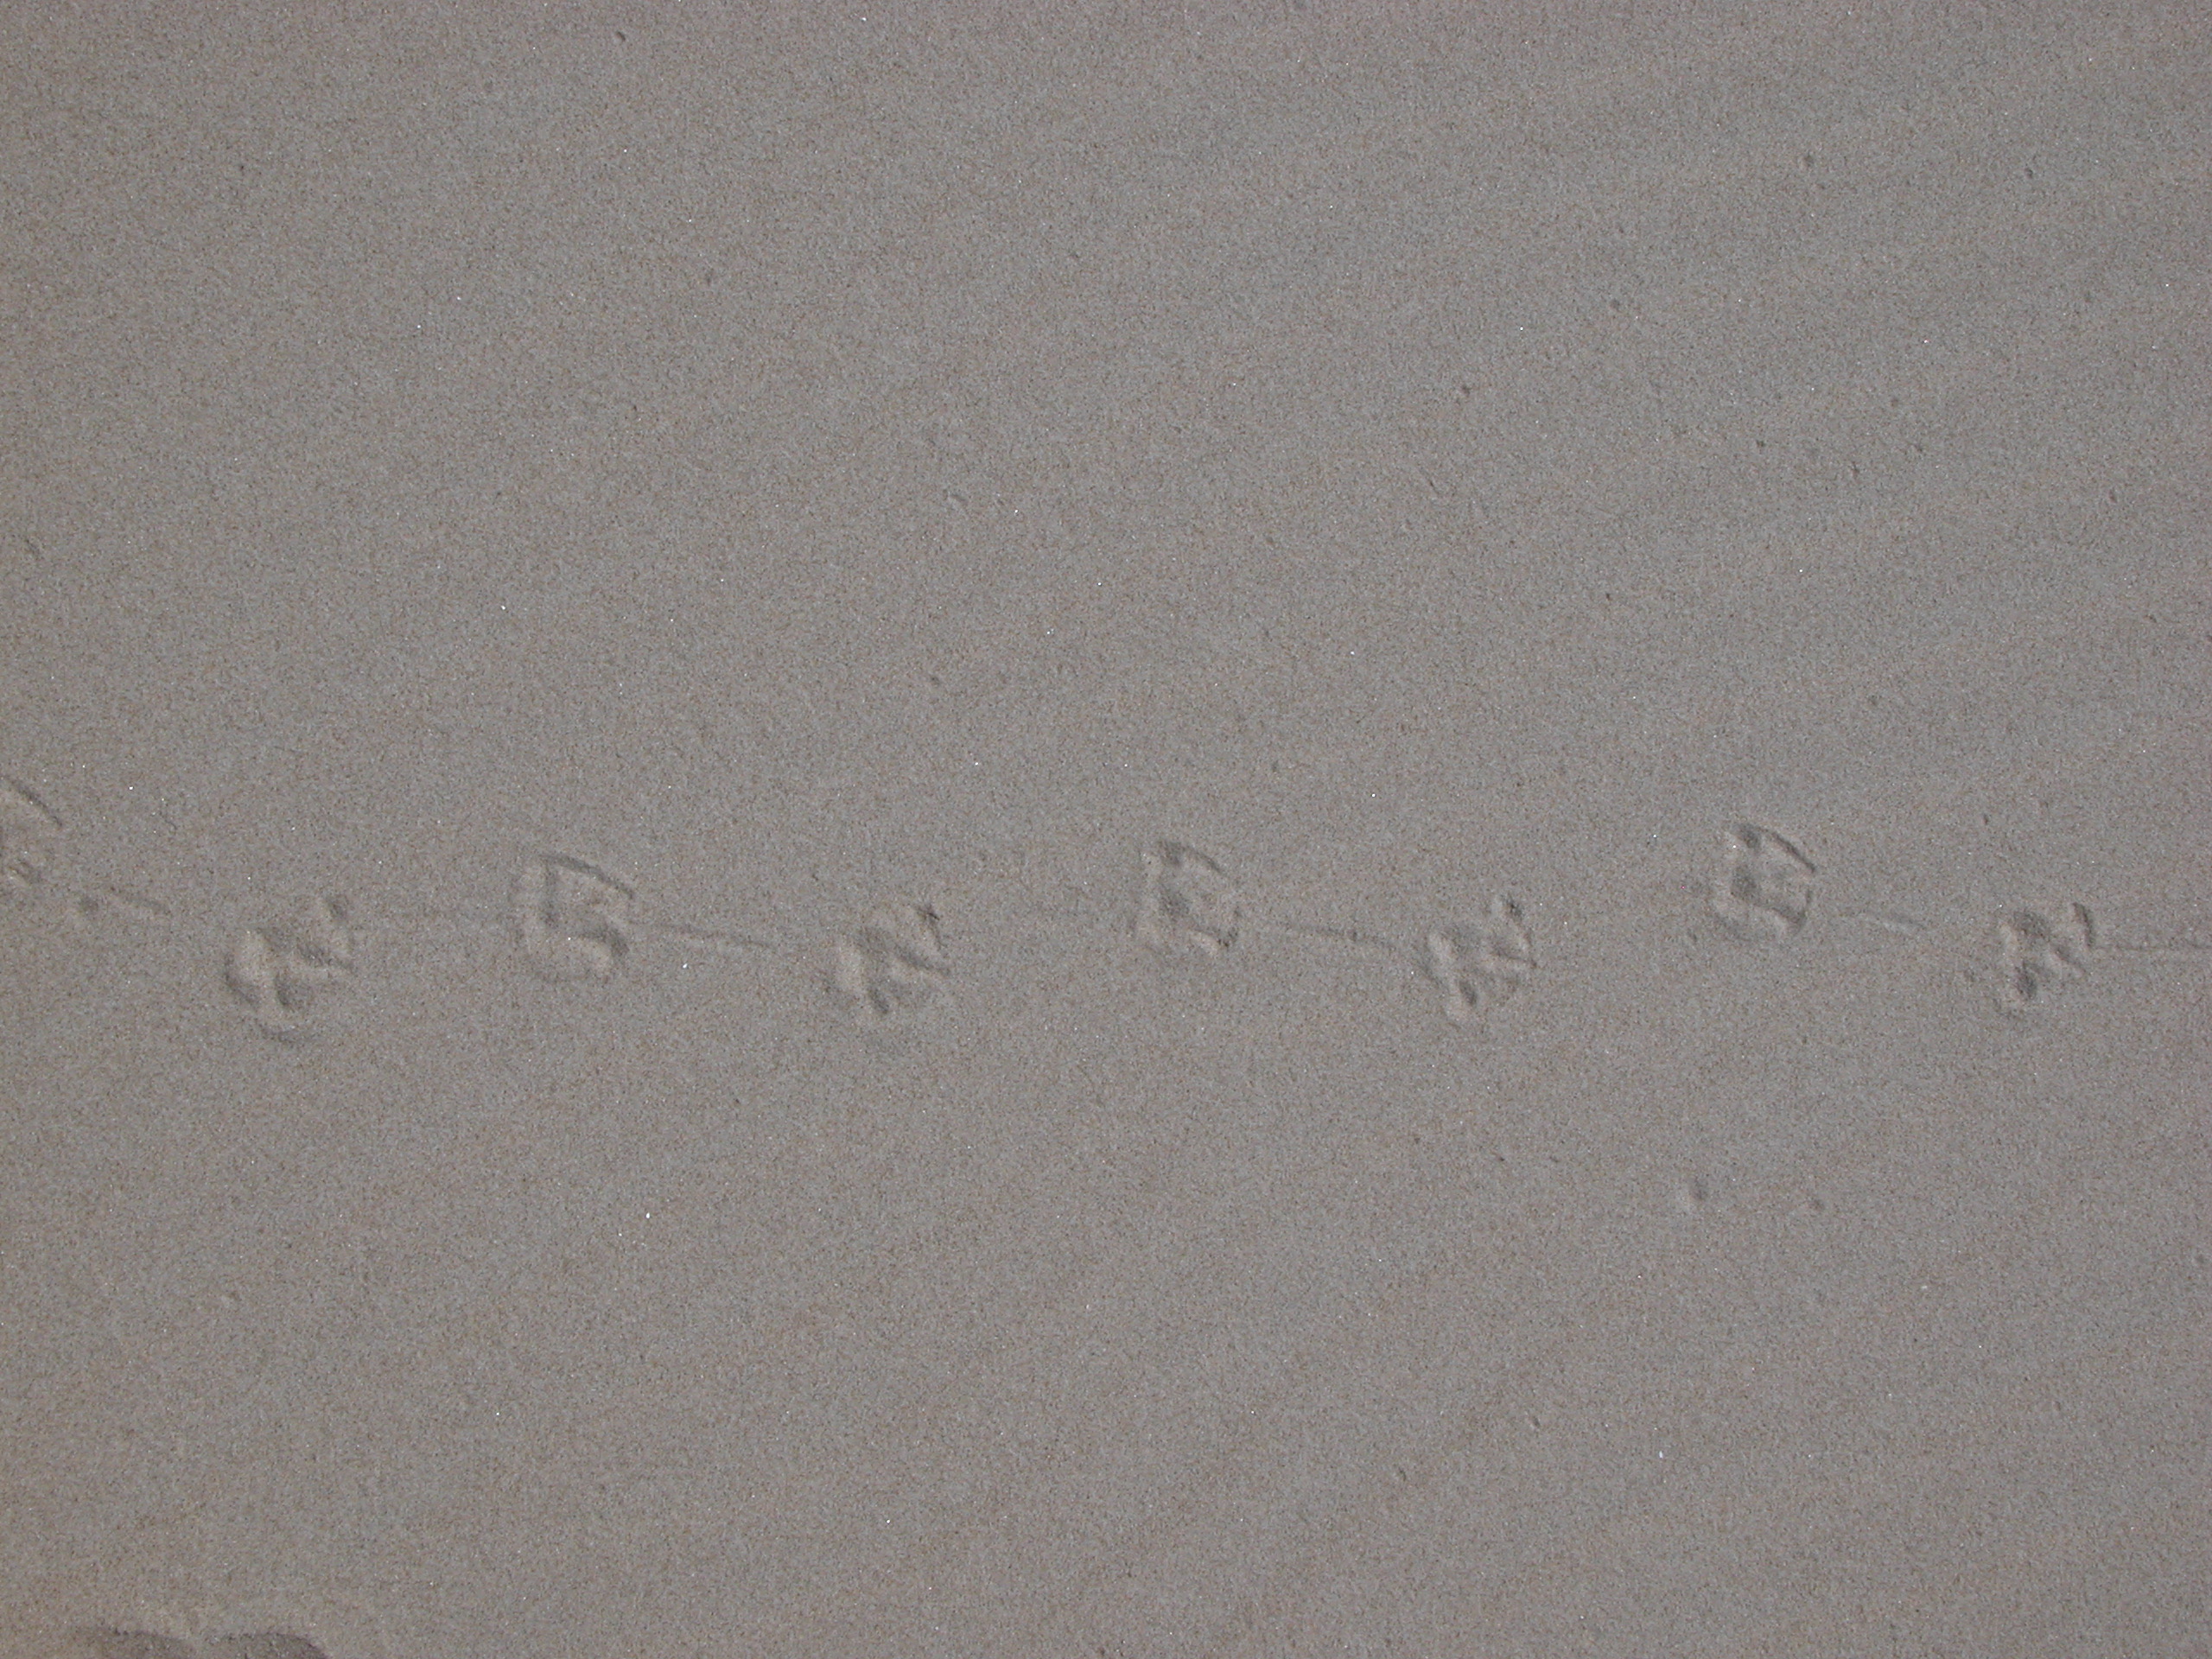 nature texture sand beach foot footprint bird trail